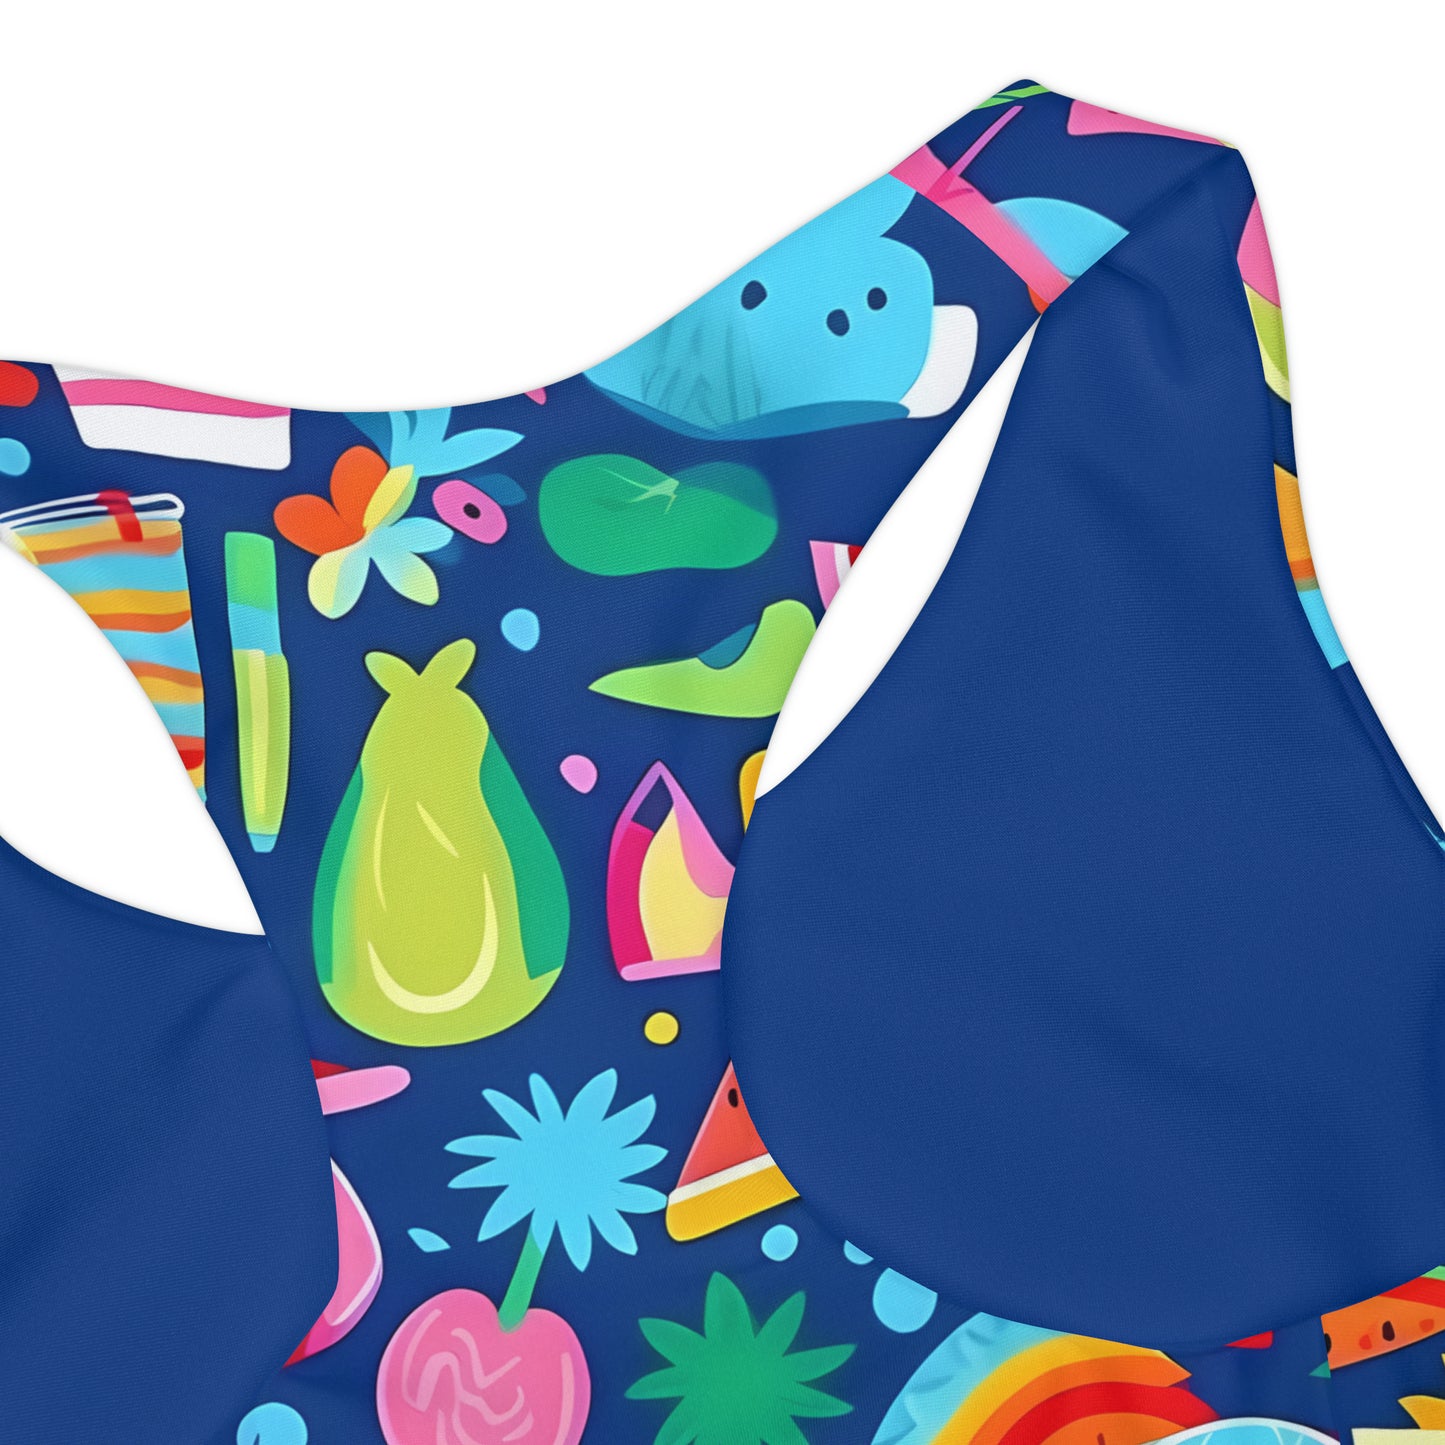 Summer Splash Girls Two Piece Swimsuit